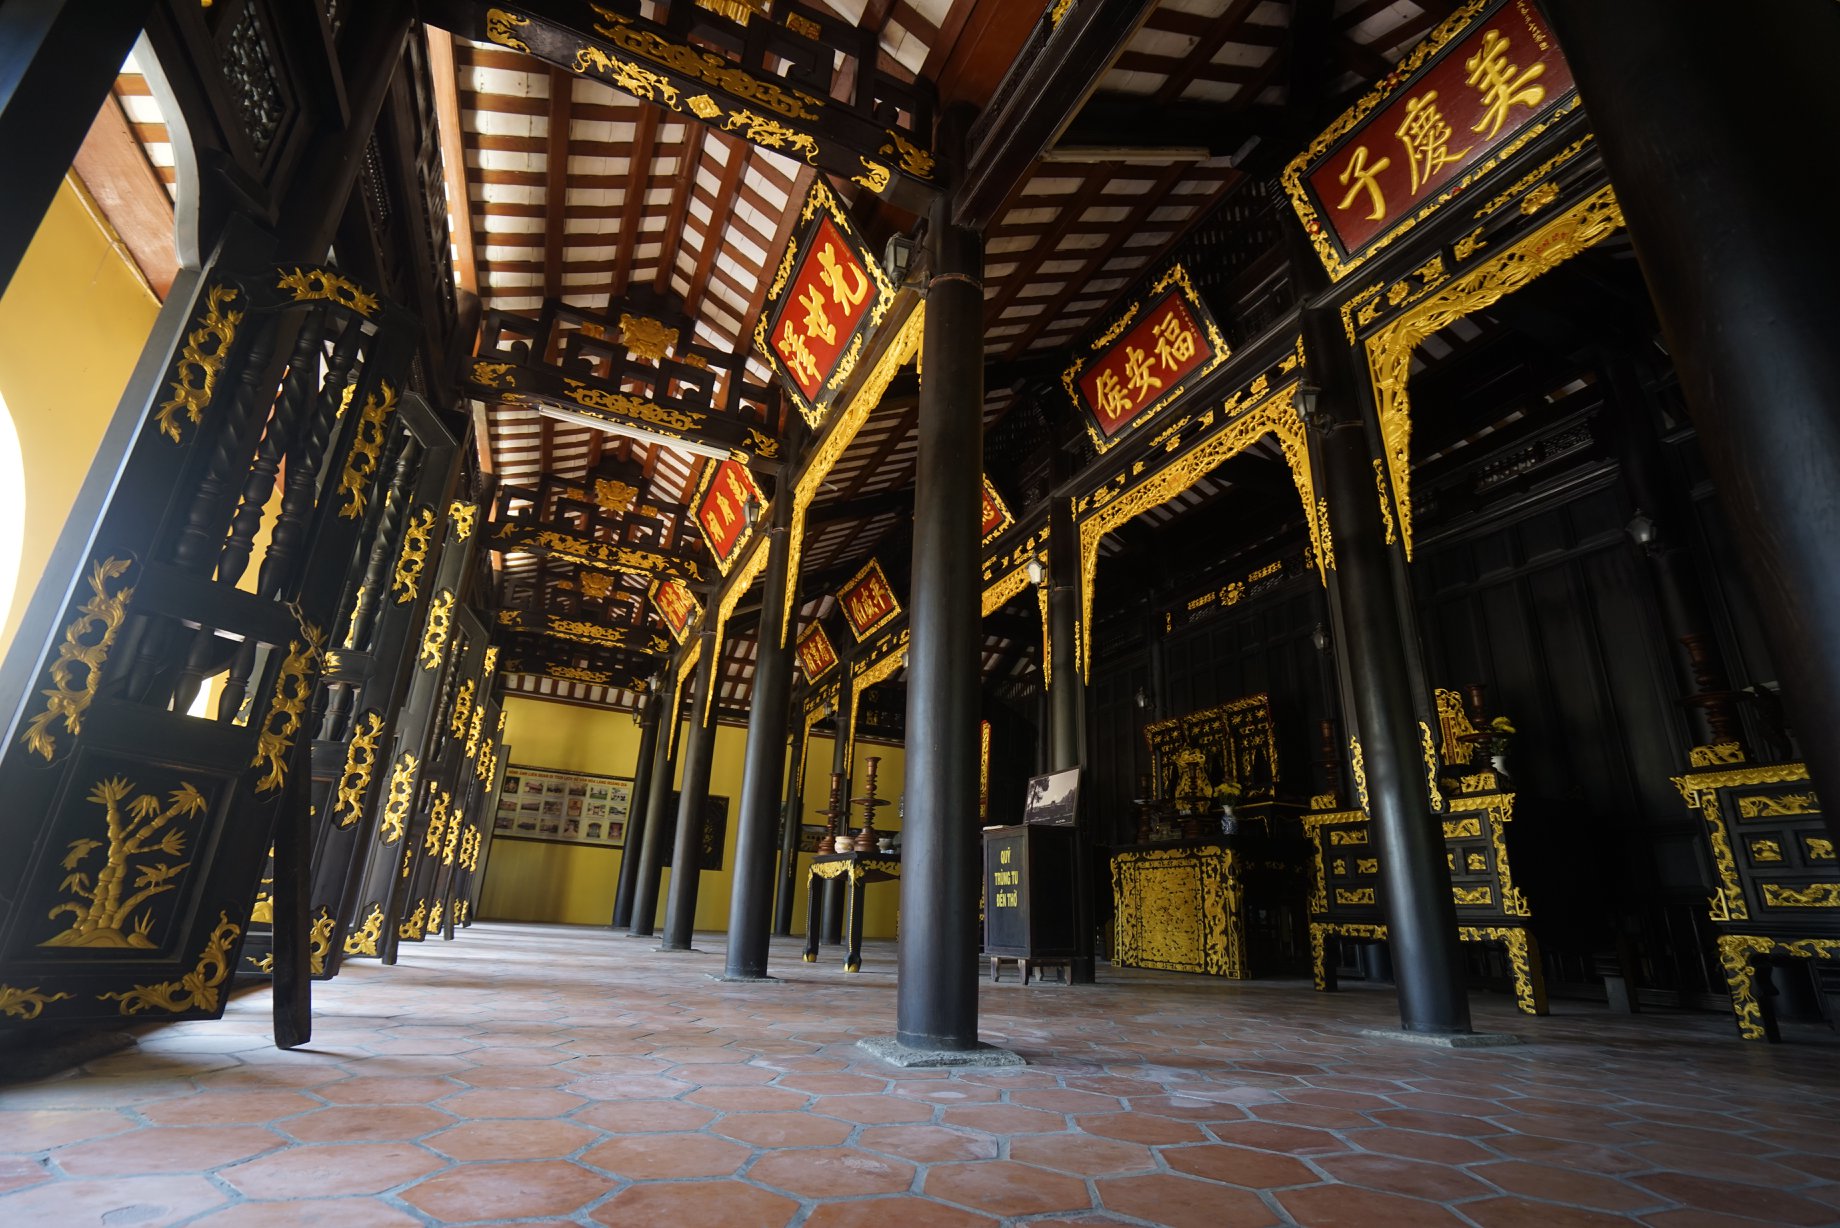 Du khách đến Tiền Giang chuộng khám phá các ngôi nhà cổ mang đậm giá trị lịch sử - văn hoá - ảnh 33